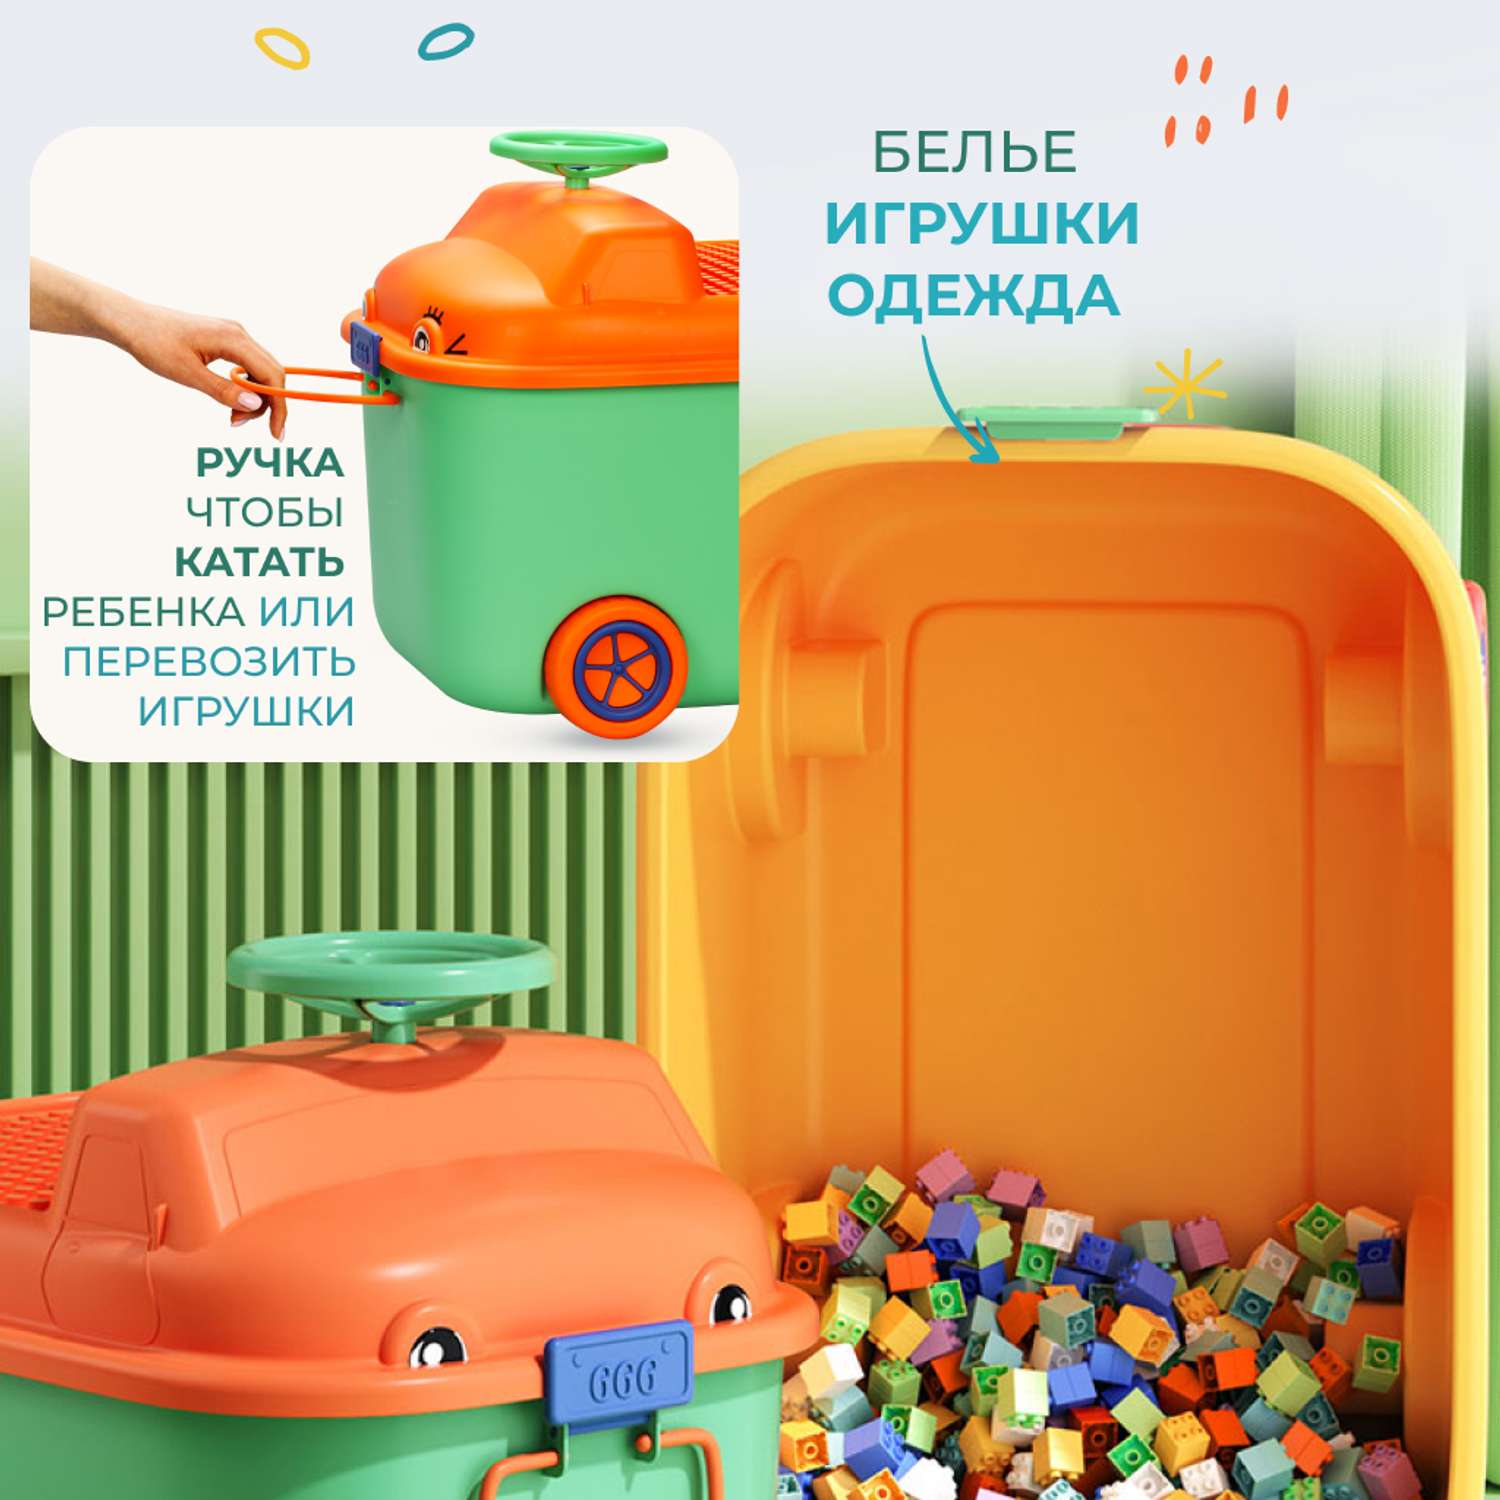 Ящик для хранения игрушек Solmax контейнер на колесиках 54х41.5х38 см зеленый - фото 2